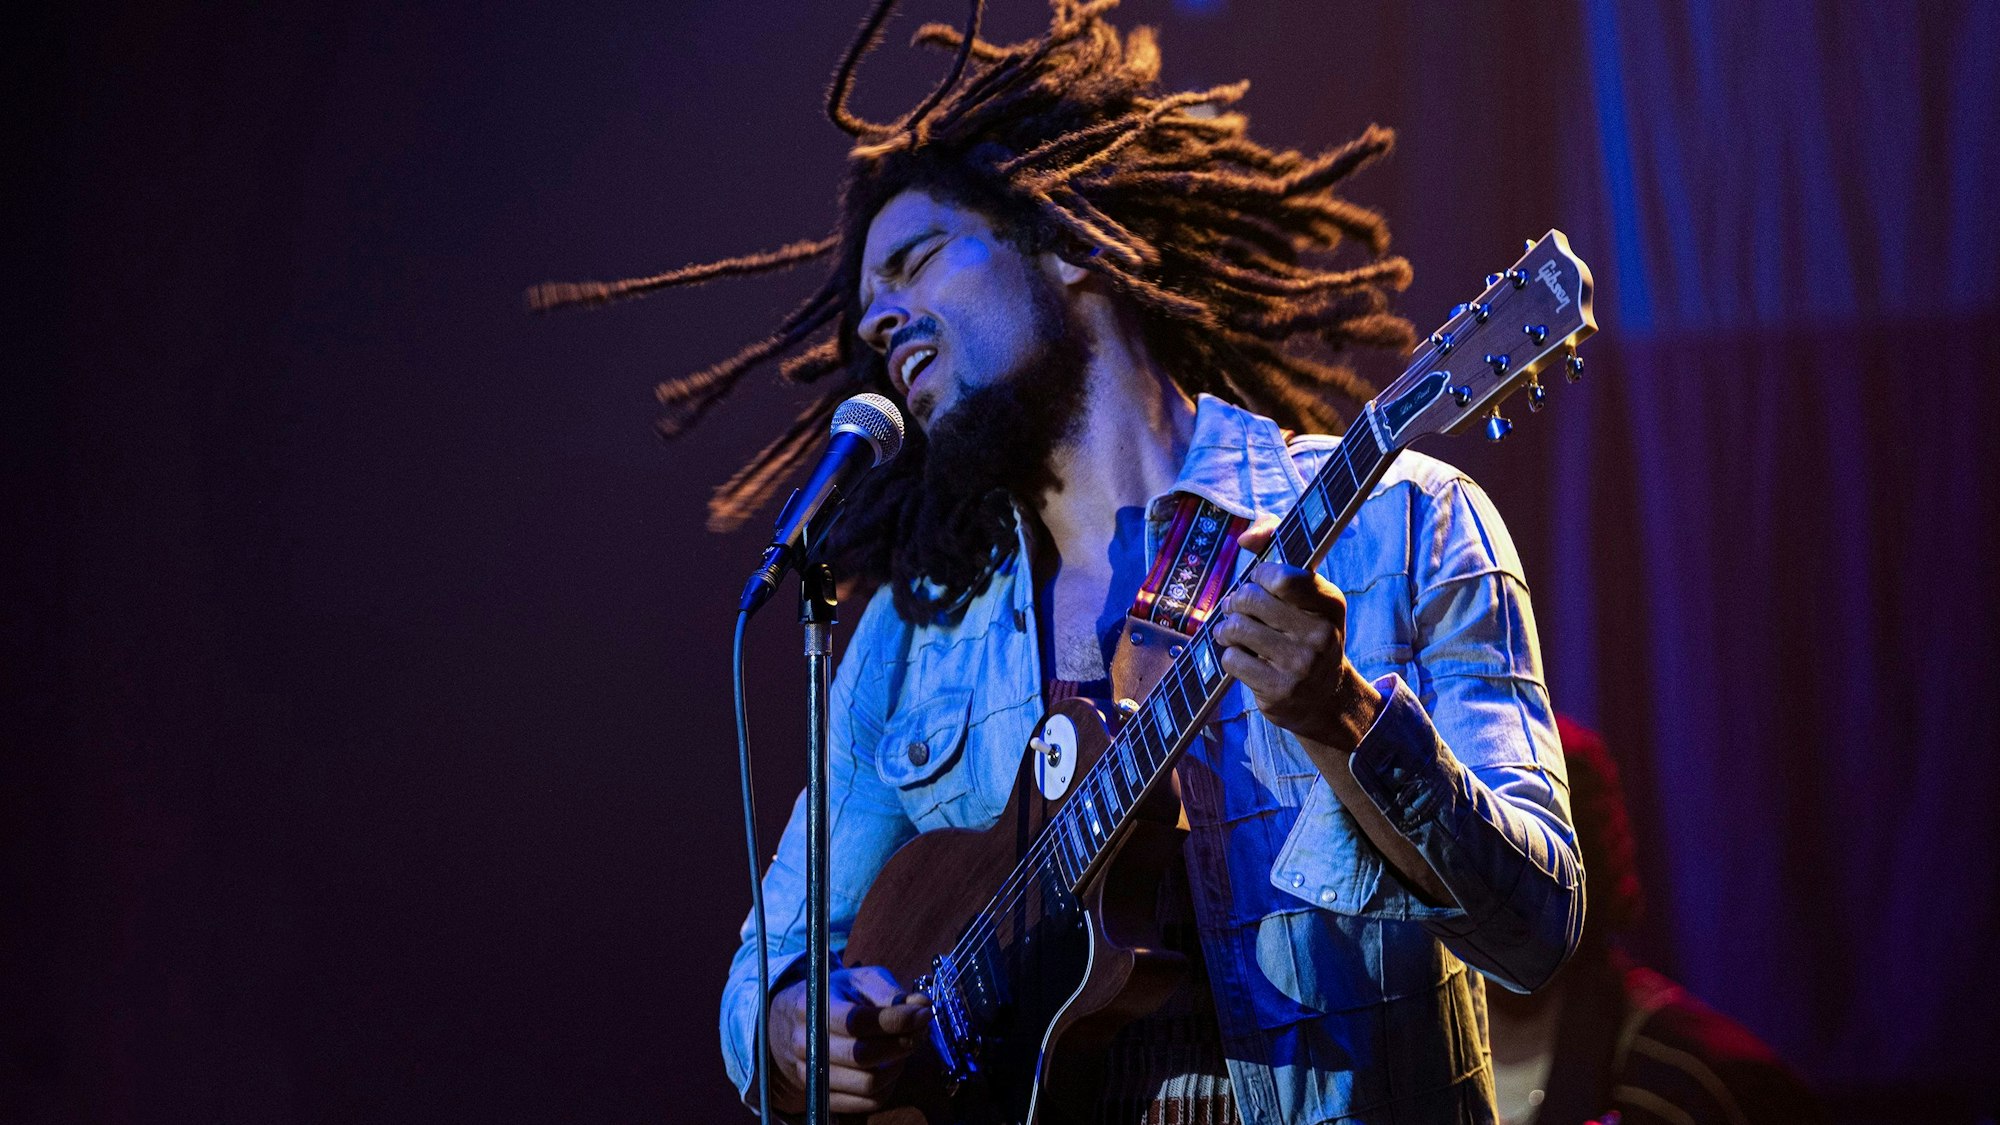 Der britische Schauspieler Kingsley Ben-Adir steht als Bob Marley Gitarre spielend und singend auf der Bühne. Er trägt eine Jeansjacke, seine Rastazöpfe